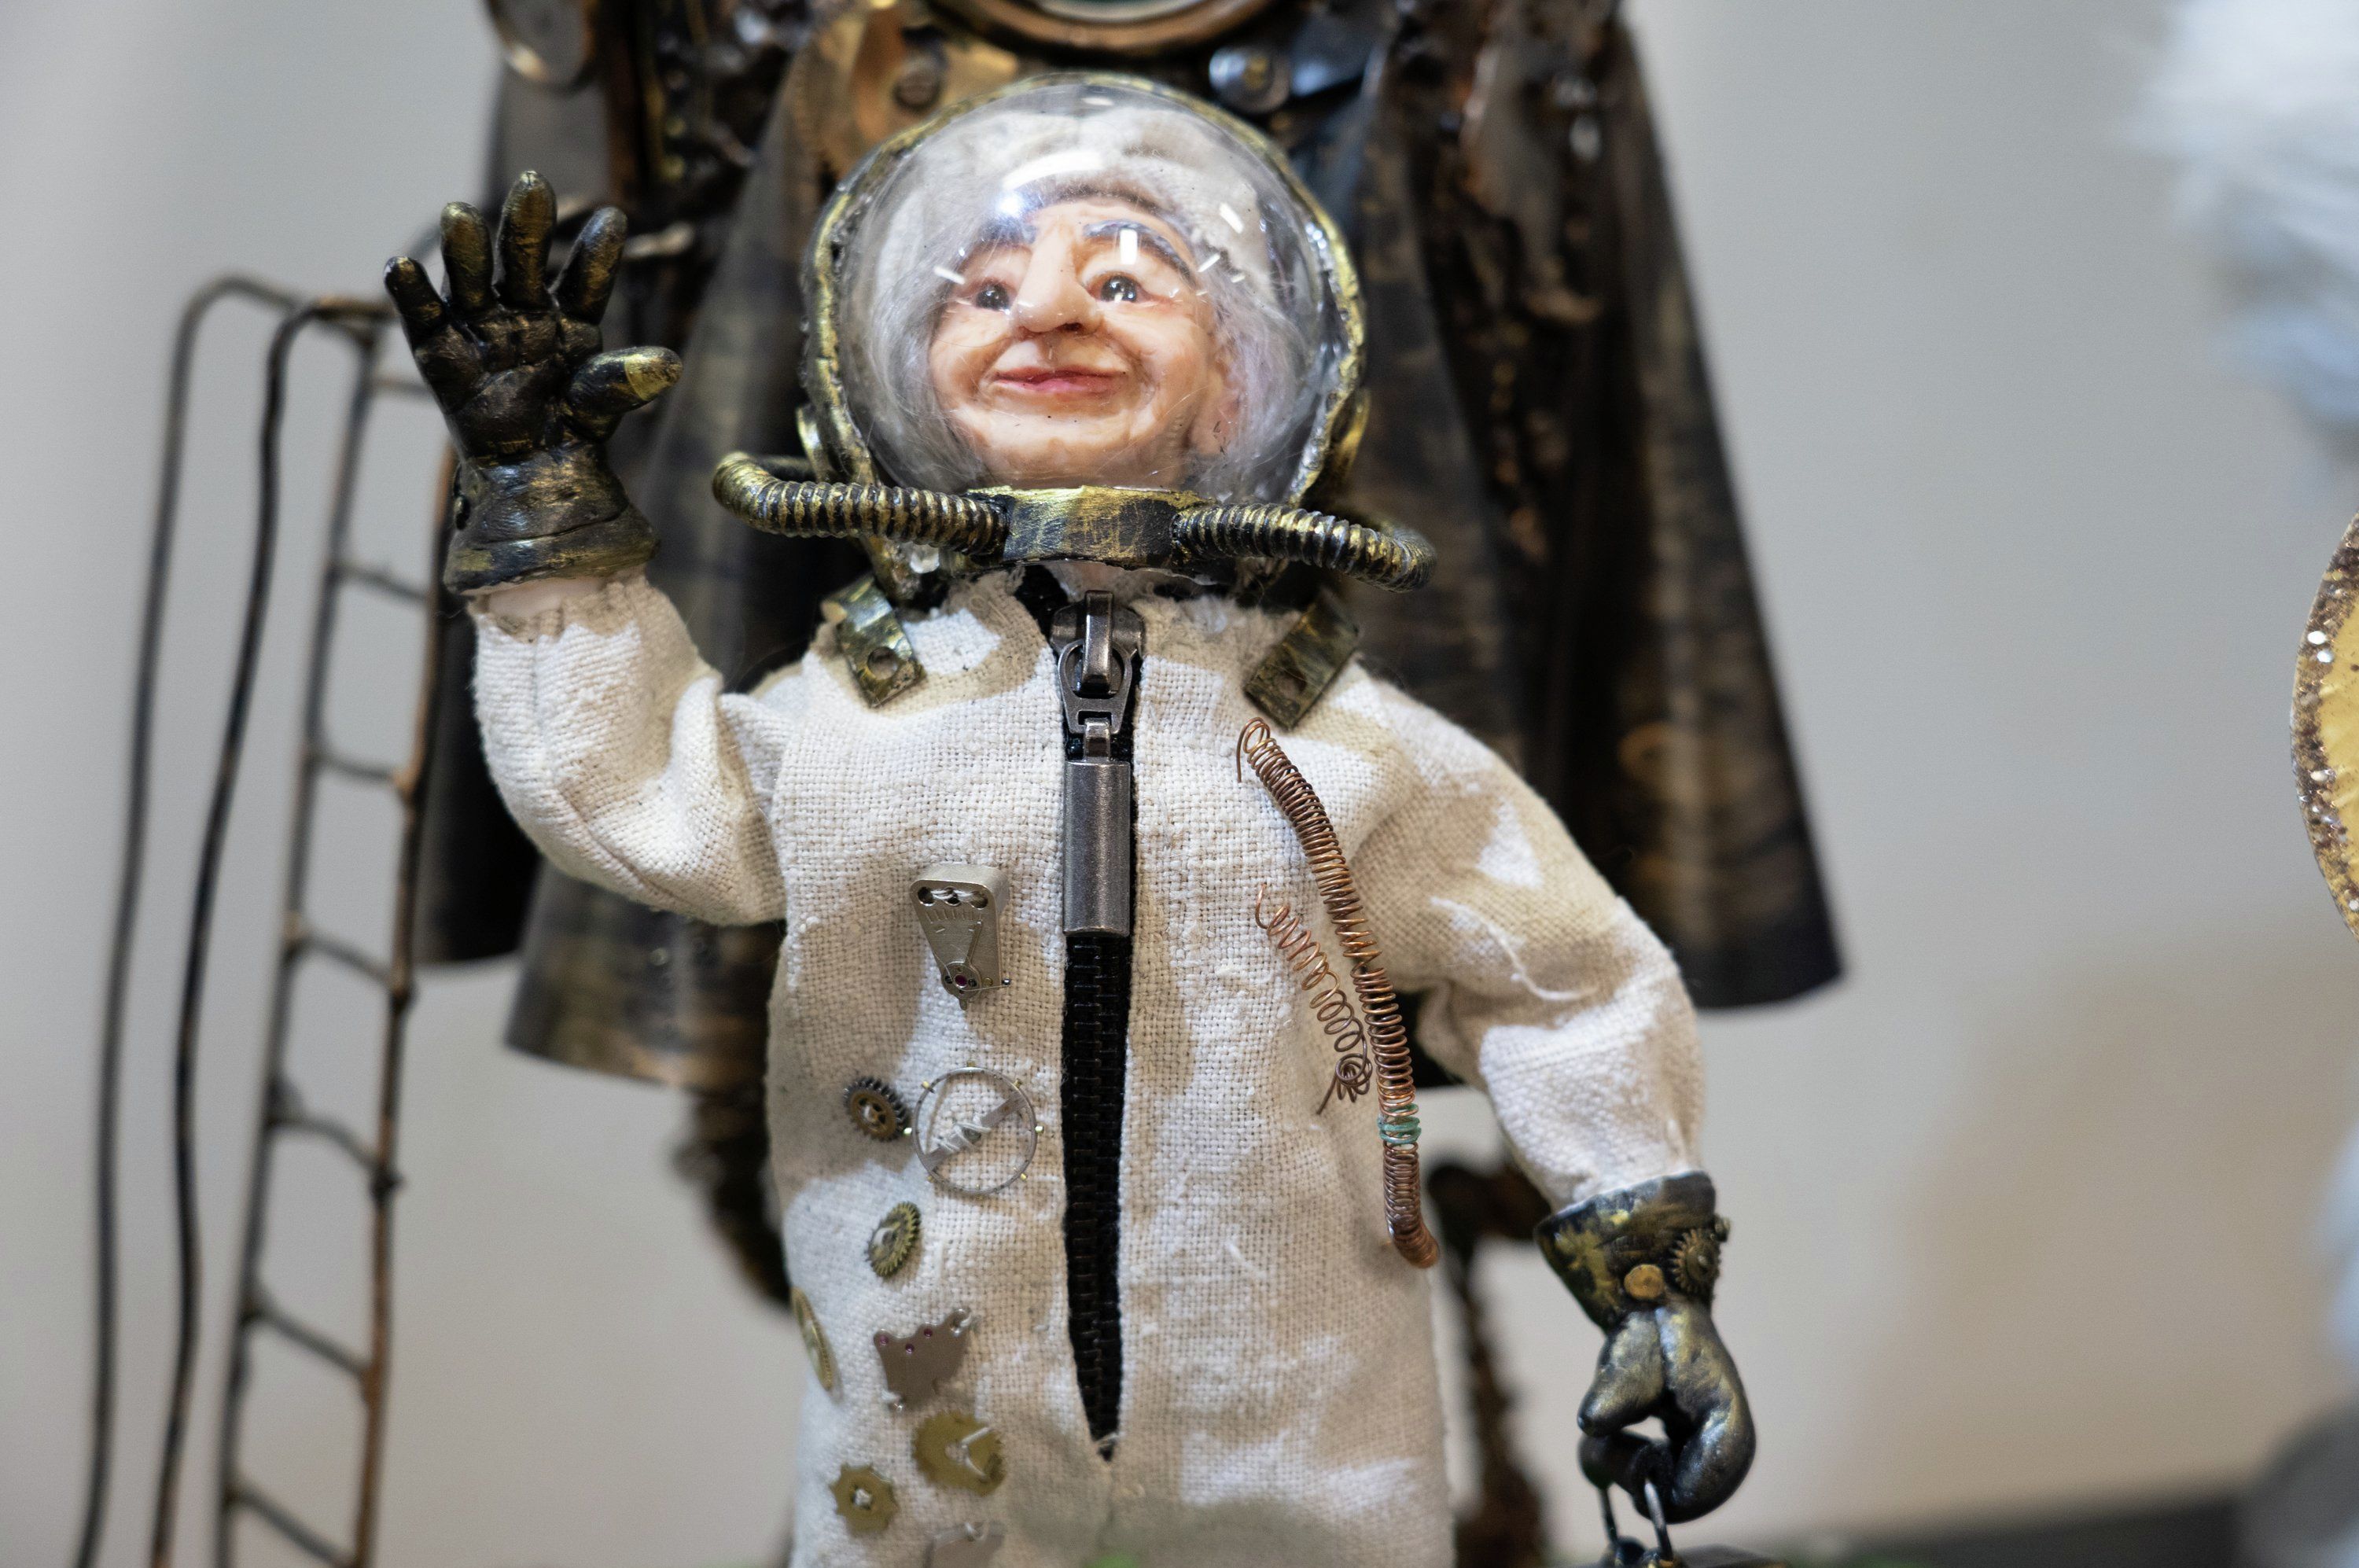 Еще одна кукла Анастасии сейчас проходит подготовку в Роскосмосе для того, чтобы отправиться на МКС и стать талисманом для всех прибывающих туда космонавтов